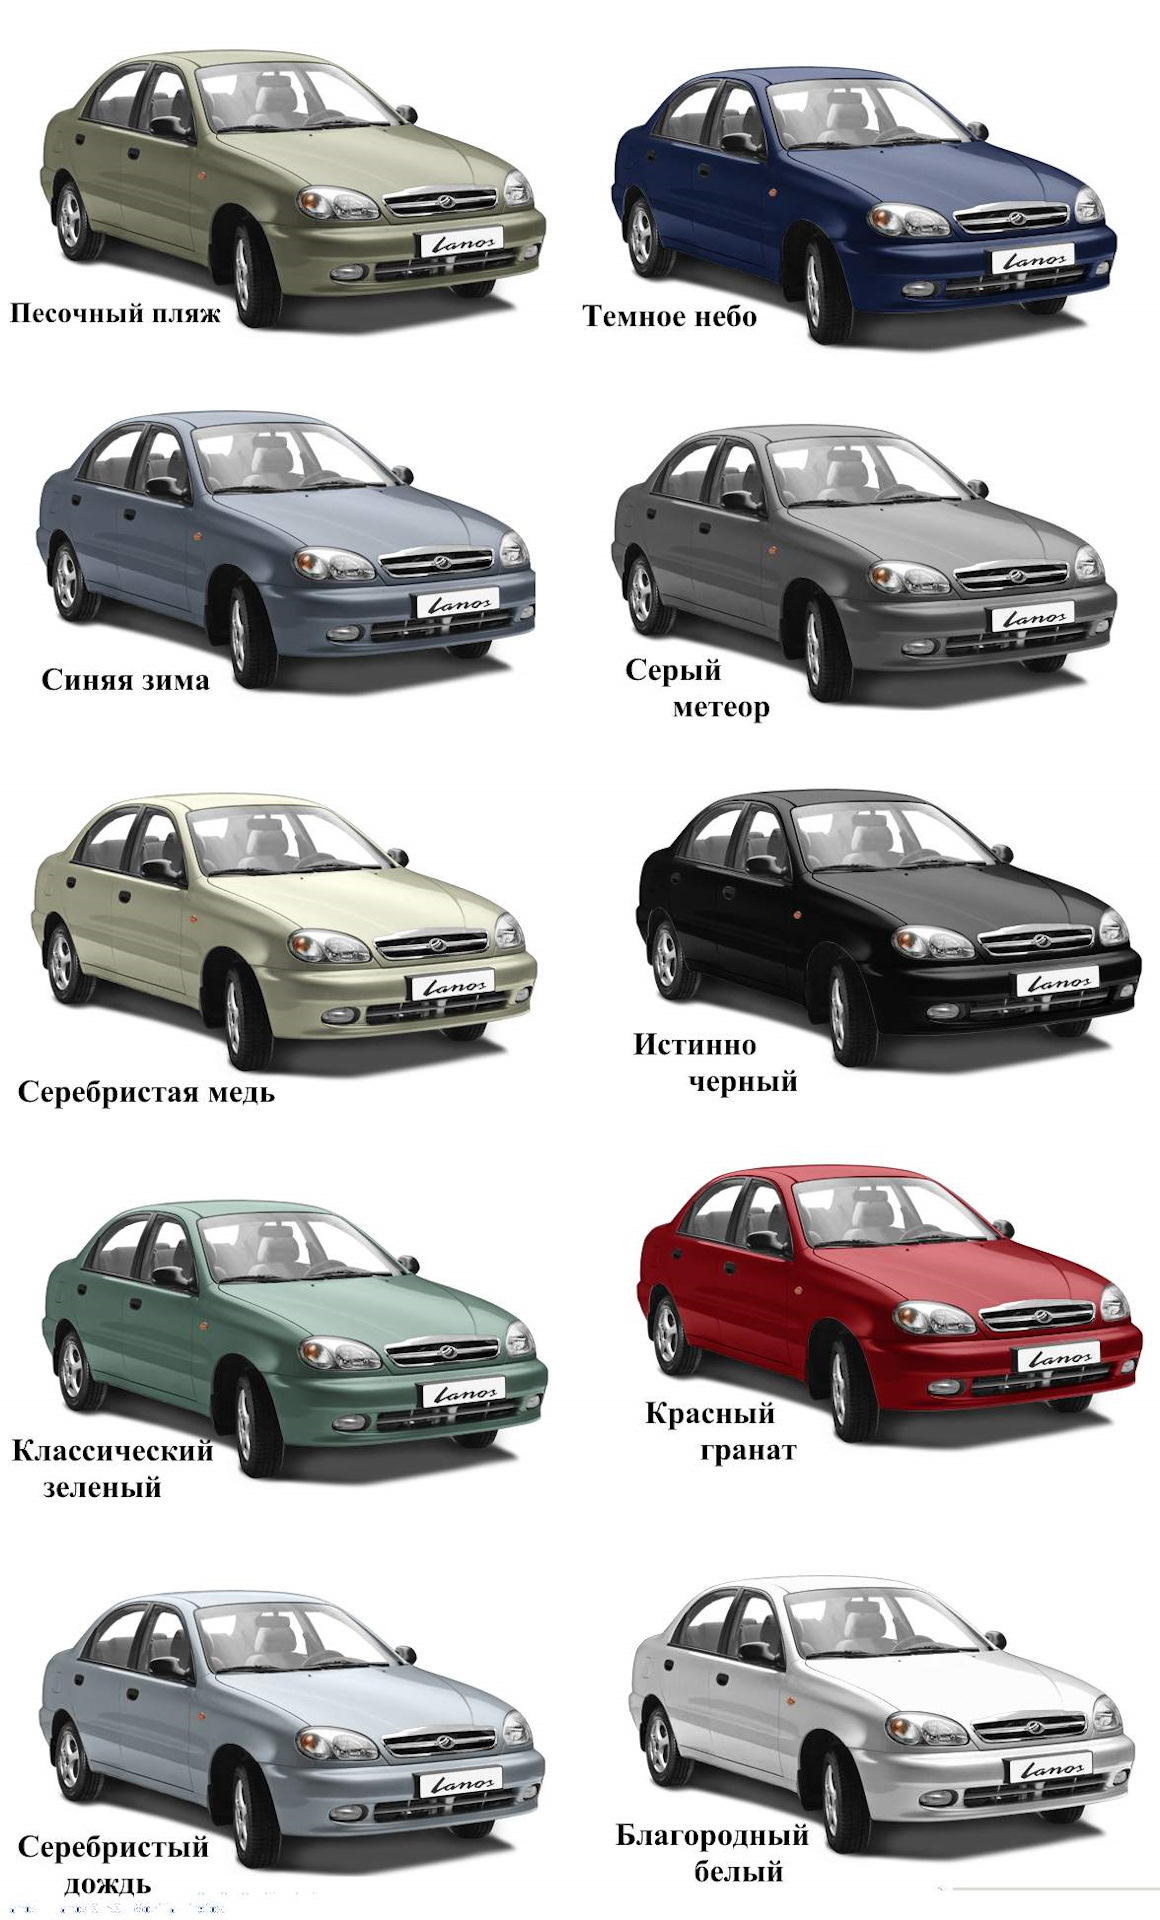 Как узнать цвет автомобиля: Как узнать номер краски автомобиля? Какой код краски у автомобиля?